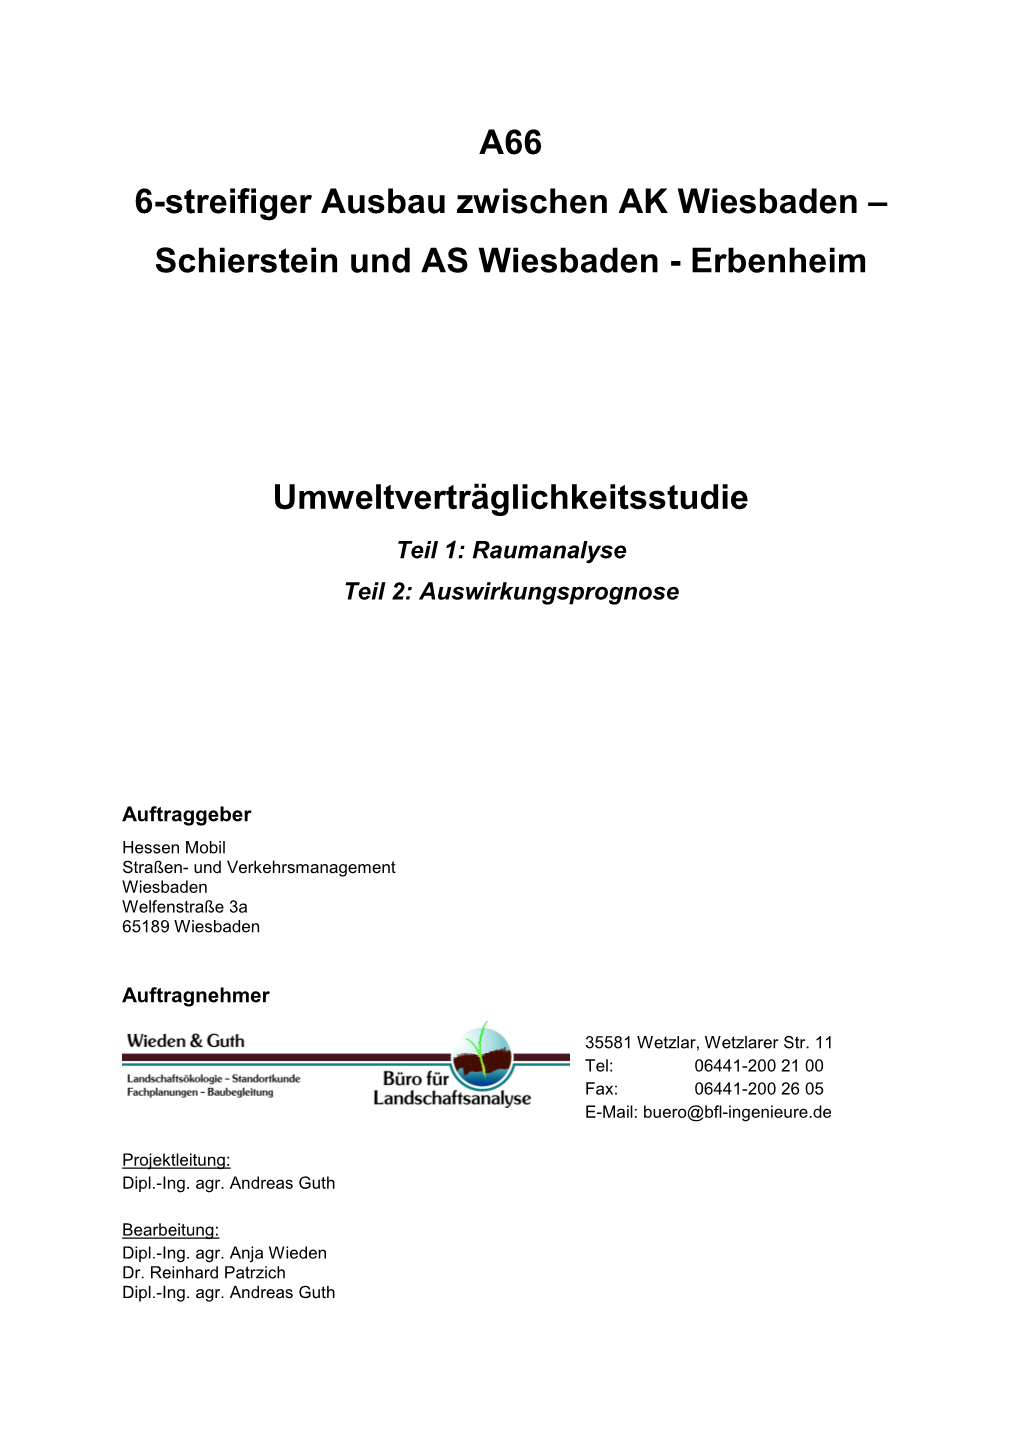 A66 6-Streifiger Ausbau Zwischen AK Wiesbaden – Schierstein Und AS Wiesbaden - Erbenheim